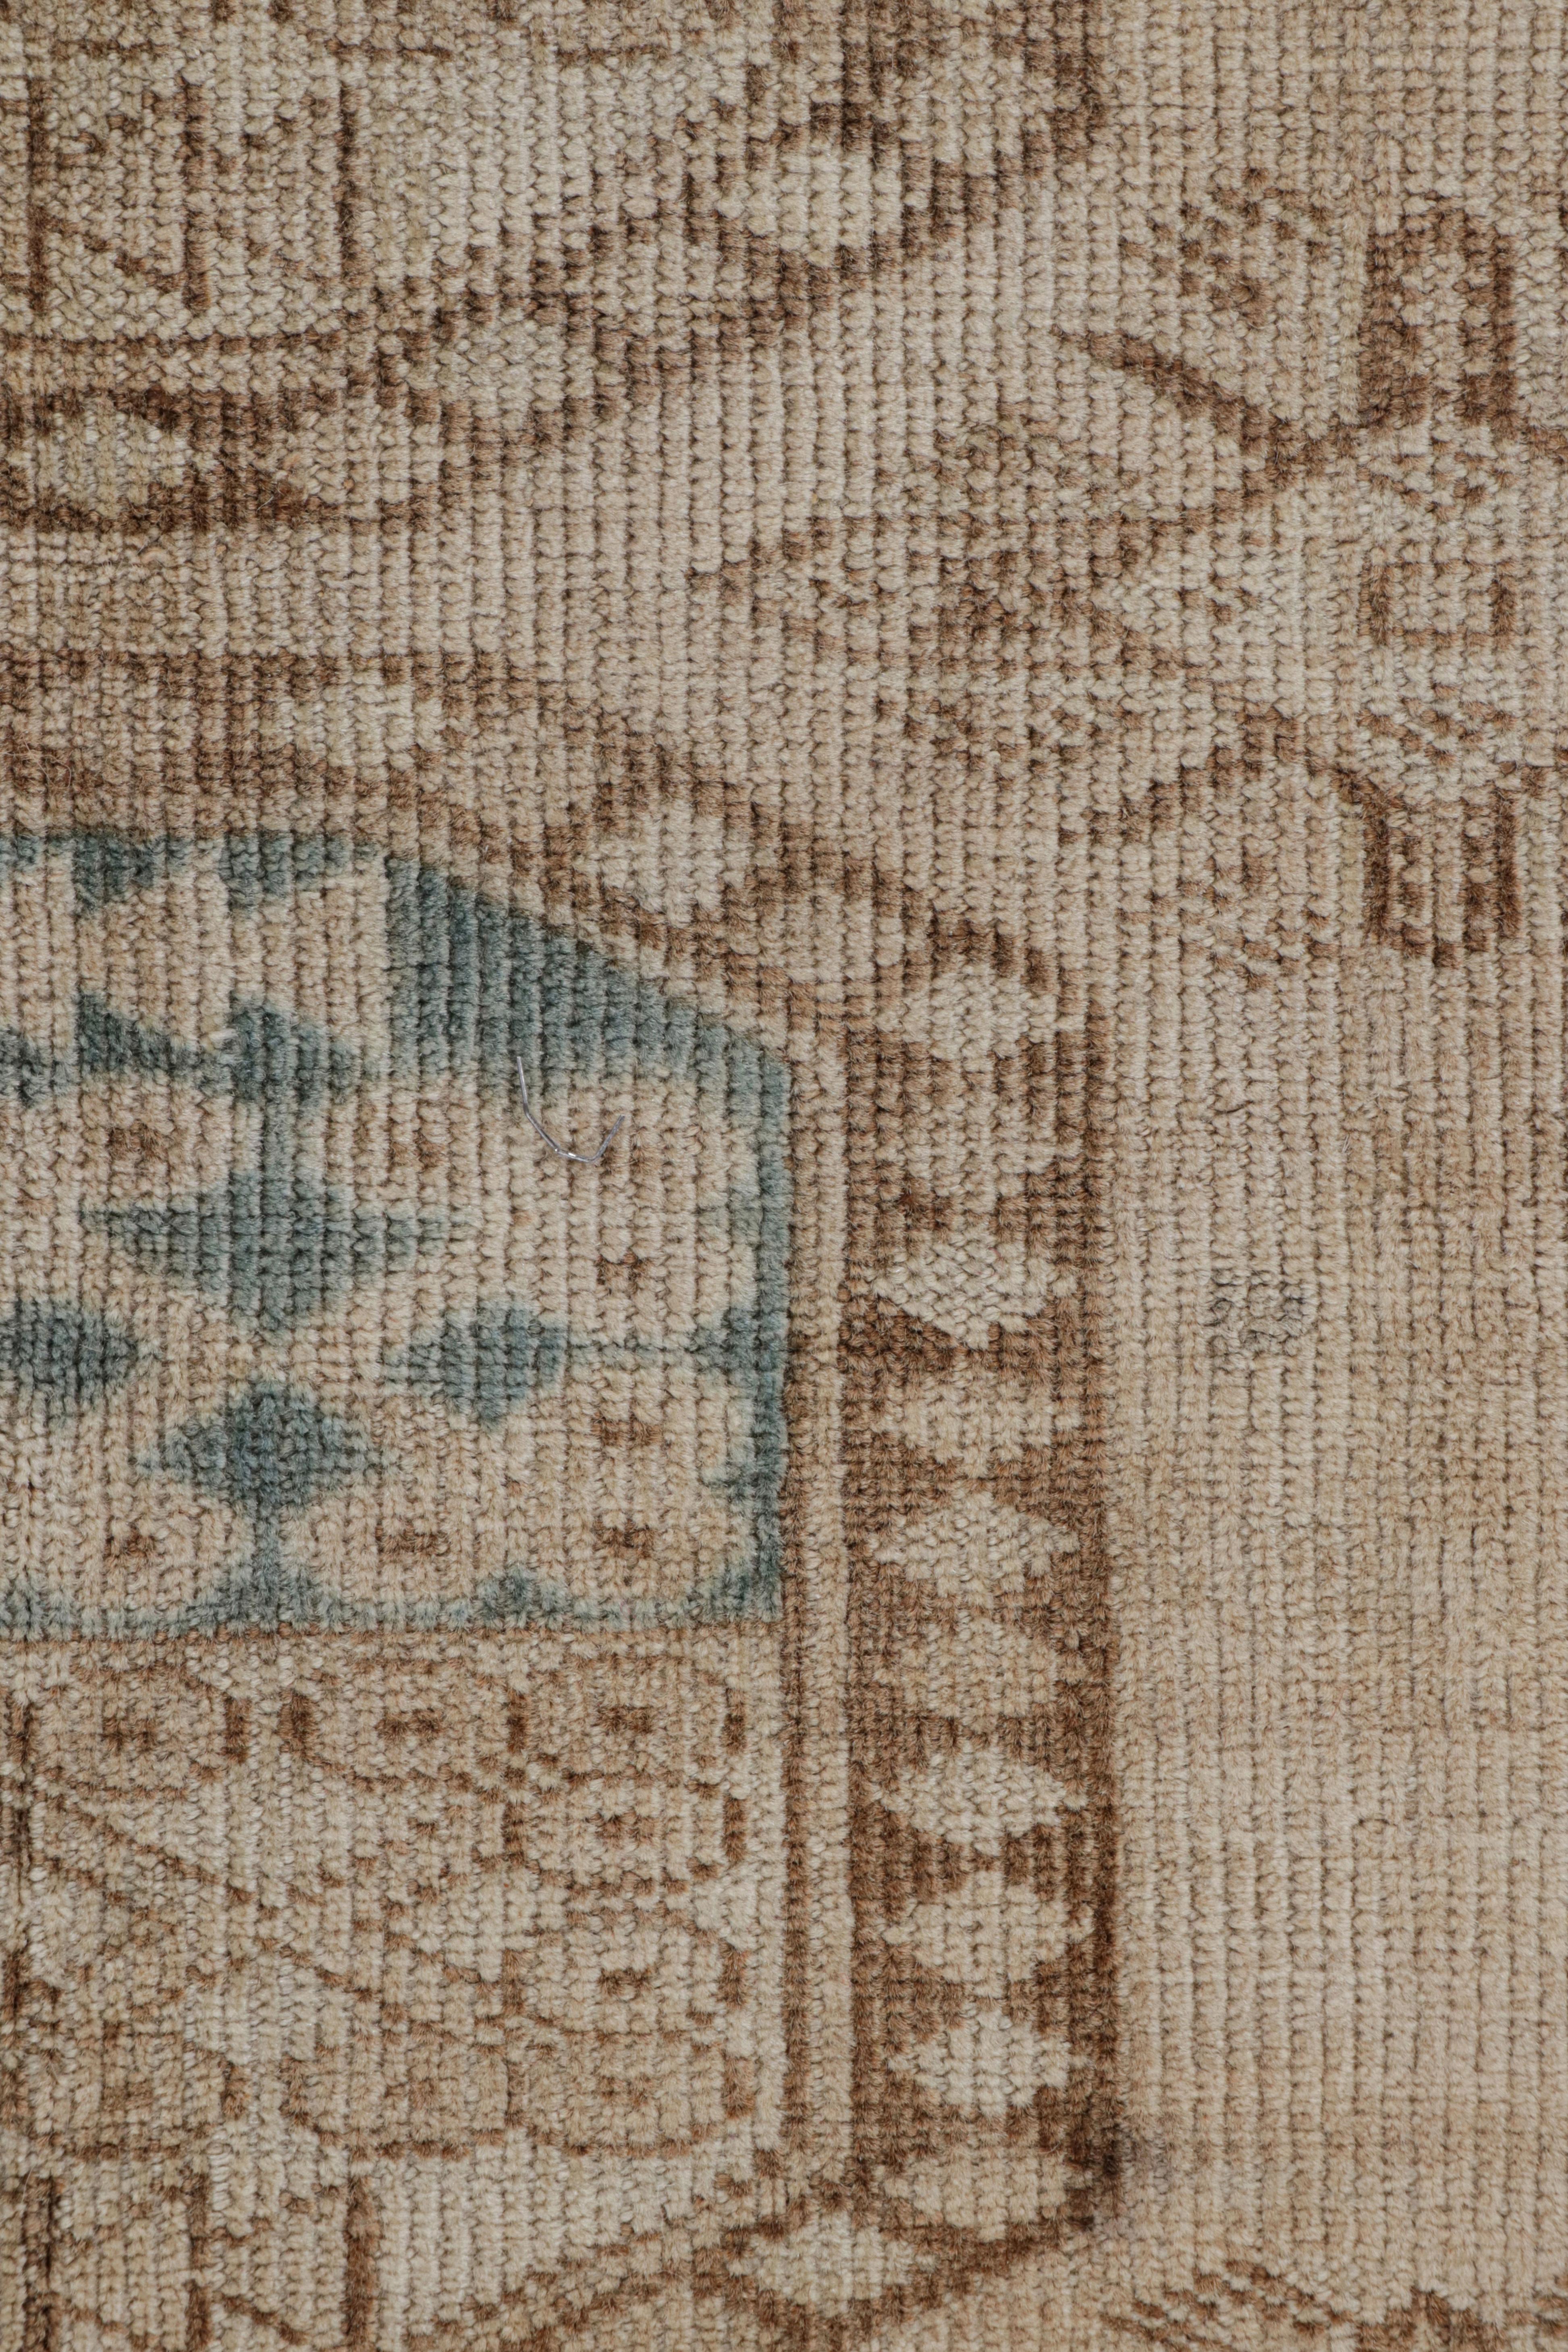 Wool Vintage Ersari Rug in Beige-Brown with Geometric Medallions, from Rug & Kilim For Sale